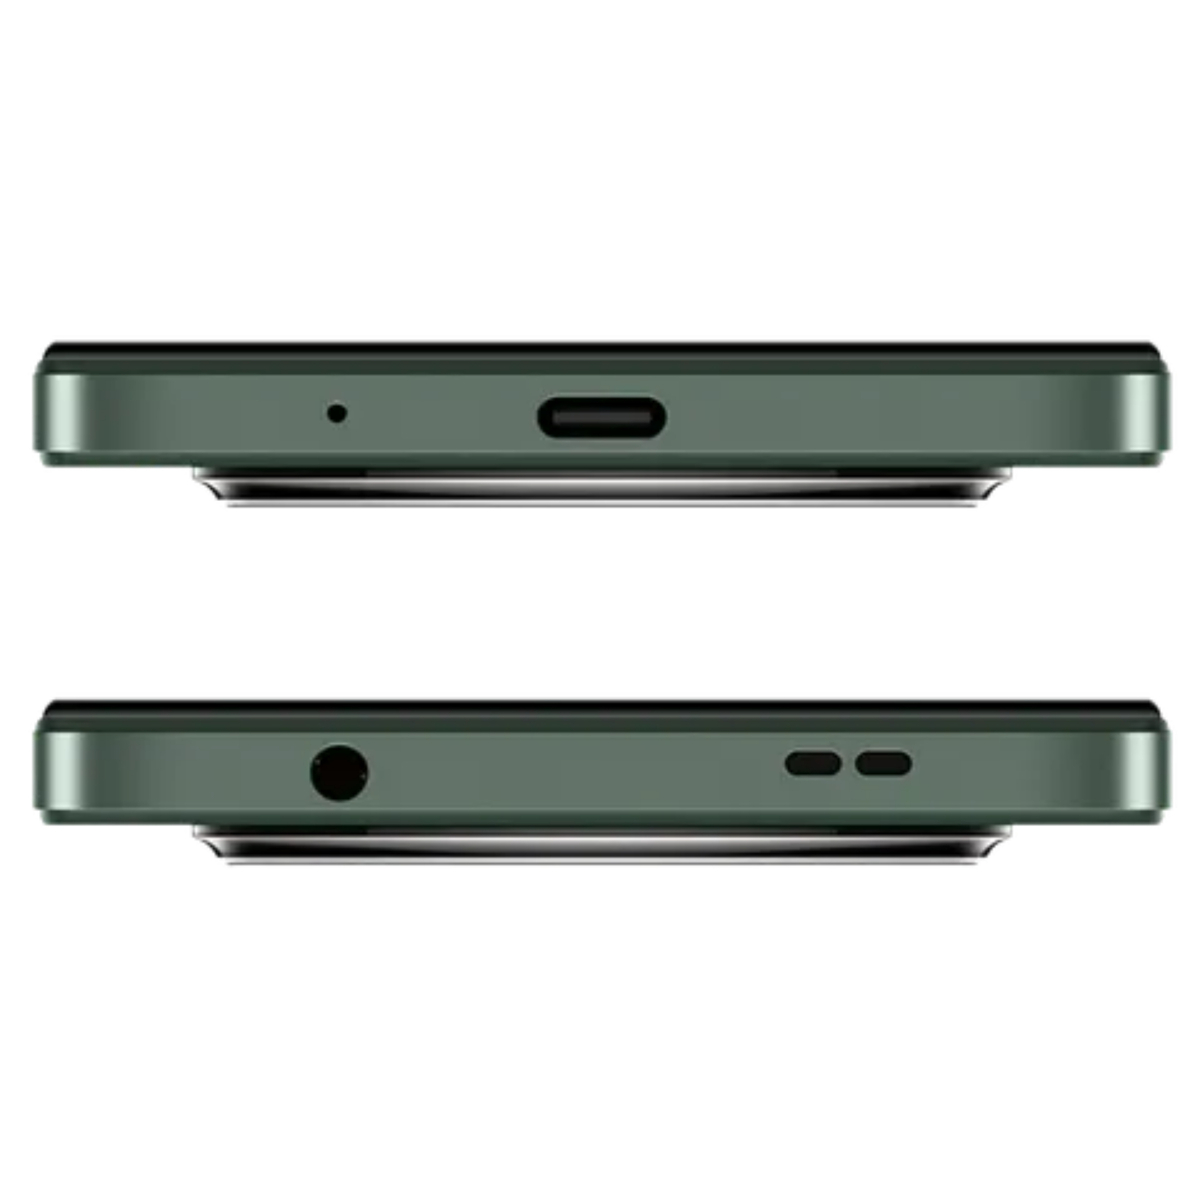 شاومي ريدمي A3 4G هاتف ذكي، الرام 3 جيجابايت، التخزين 64 جيجابايت، أخضر